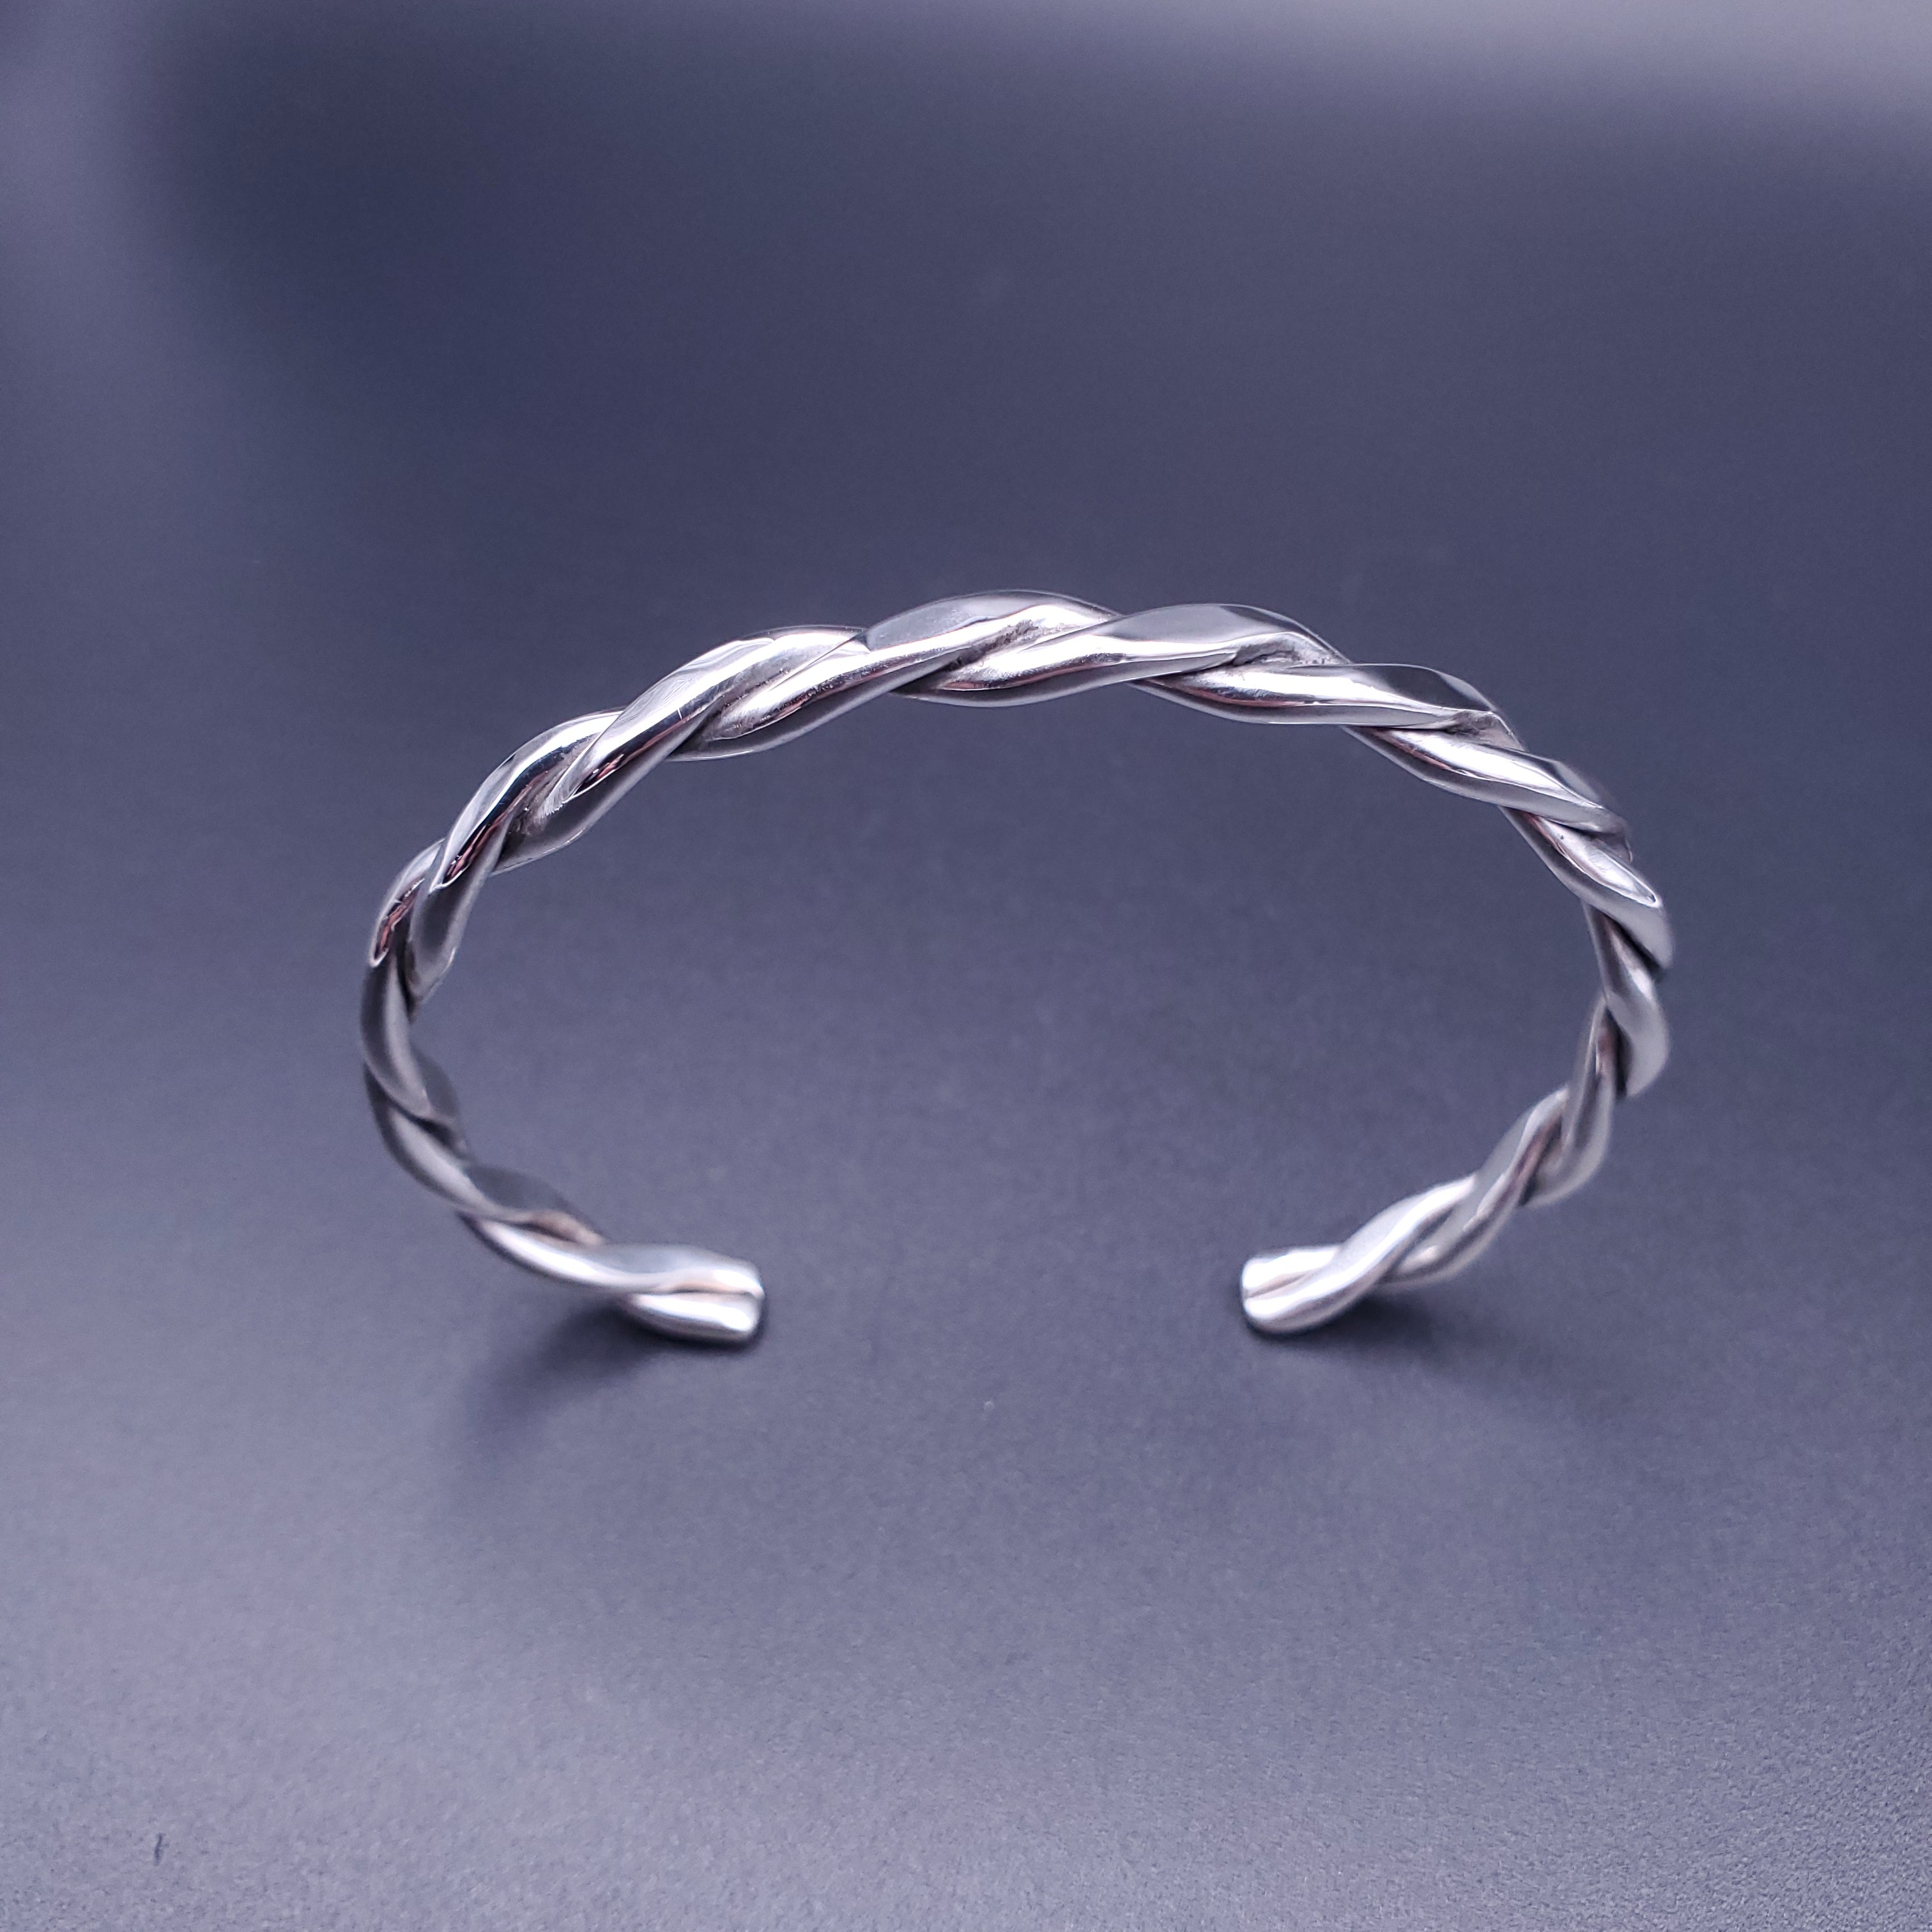 Silver twisted wire cuff bracelet